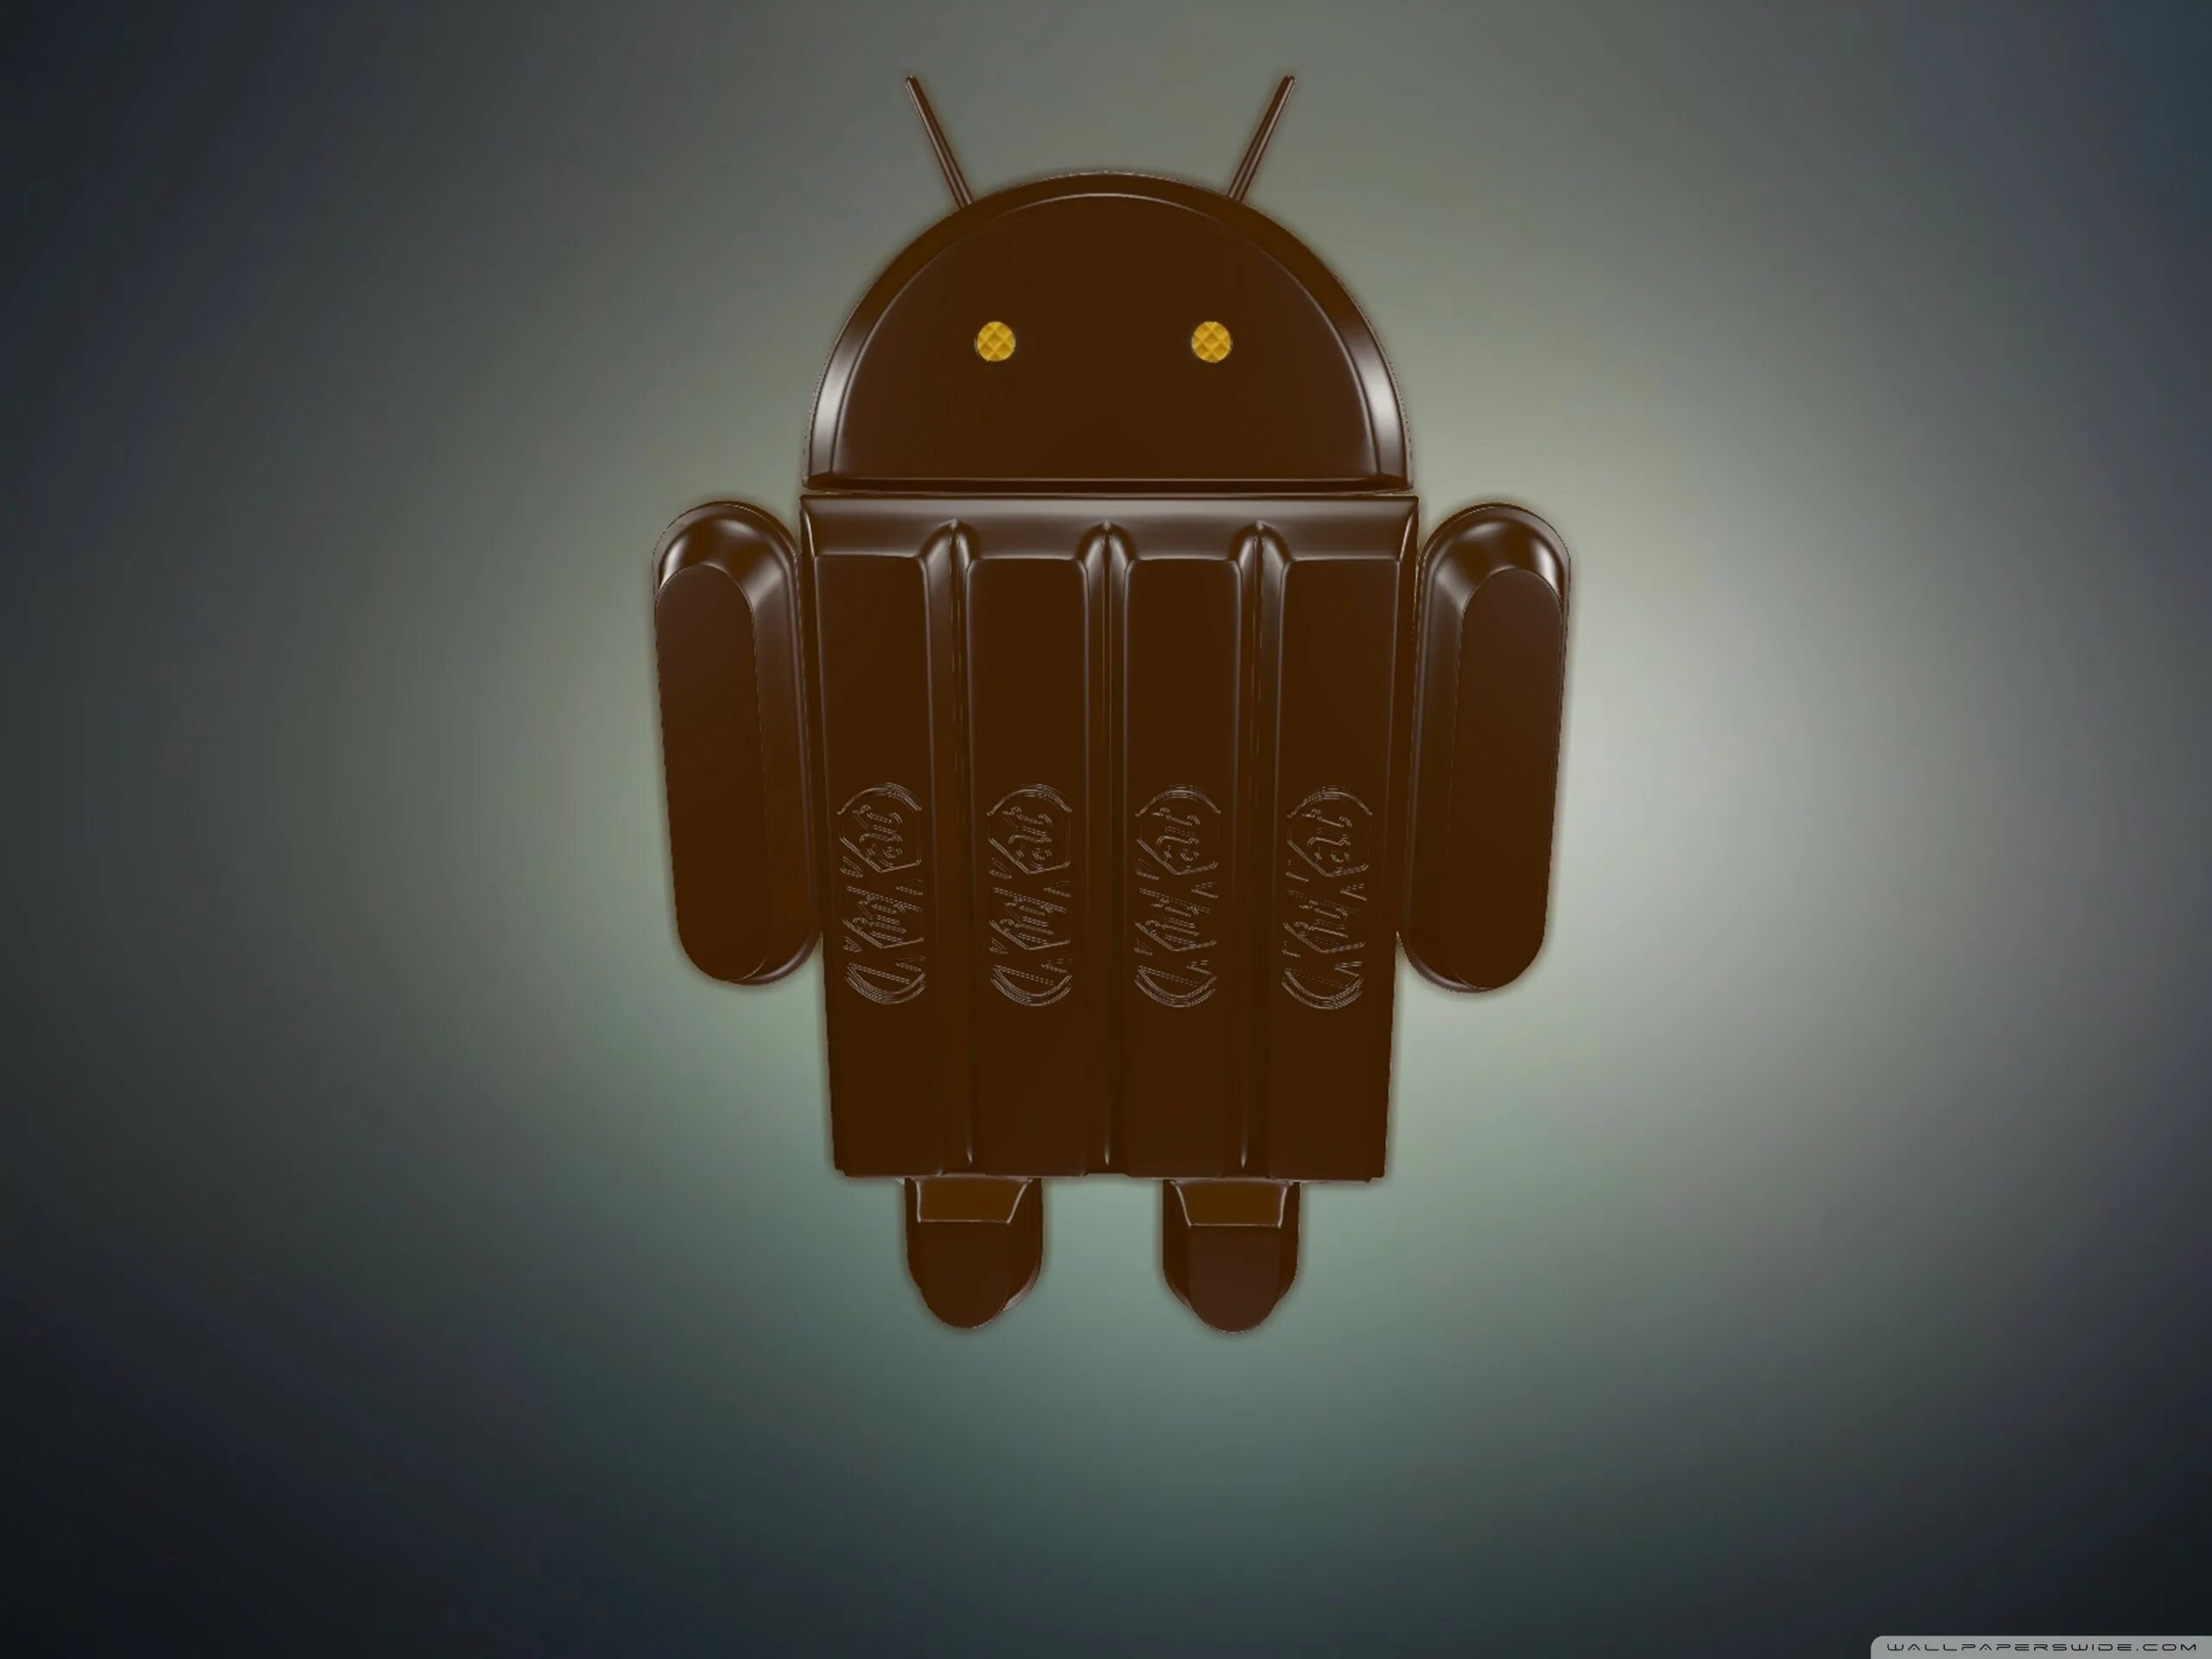 Нафигфон. Android 4.4 Kitkat. Android 4.4 Kitkat обои. Андроид КИТКАТ. Фото на рабочий стол андроид.